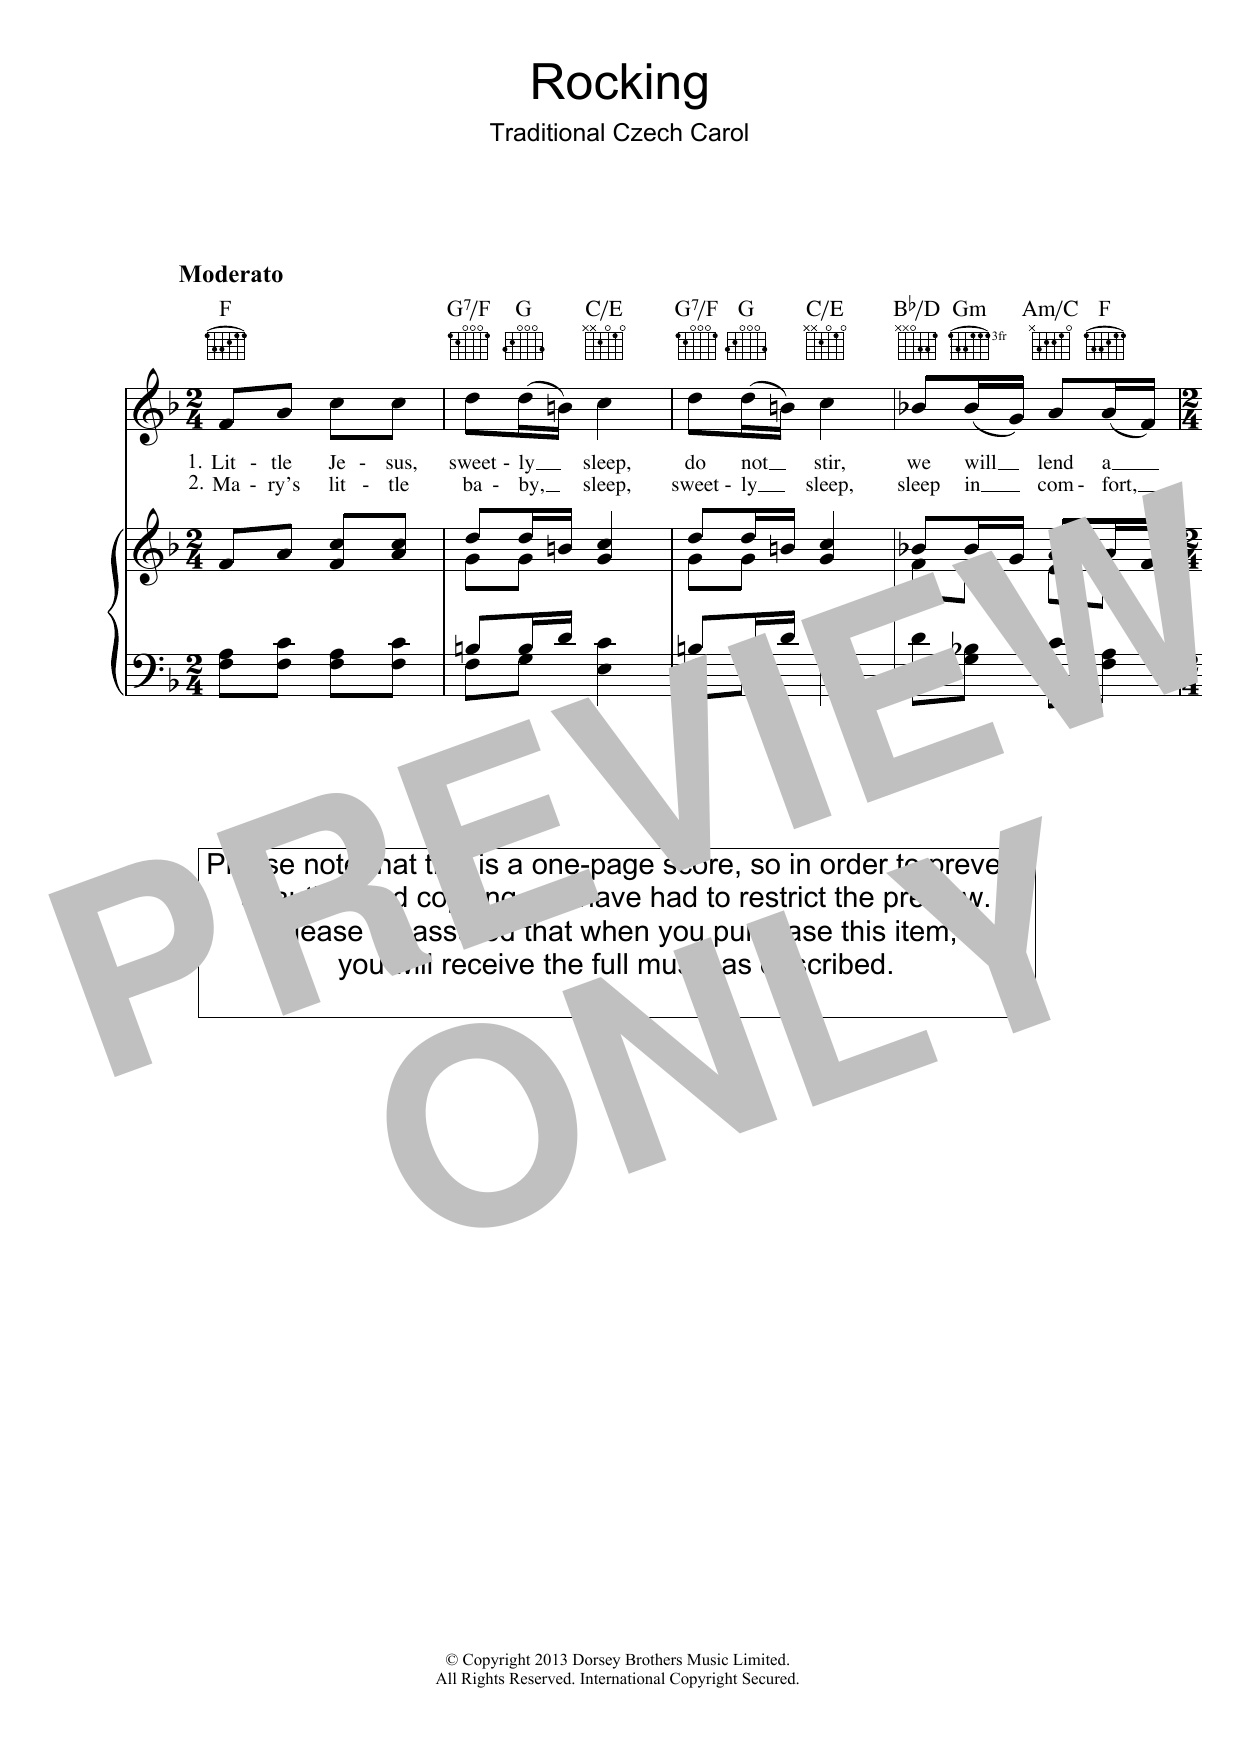 Christmas Carol Little Jesus (Rocking Carol) Sheet Music Notes & Chords for Lead Sheet / Fake Book - Download or Print PDF